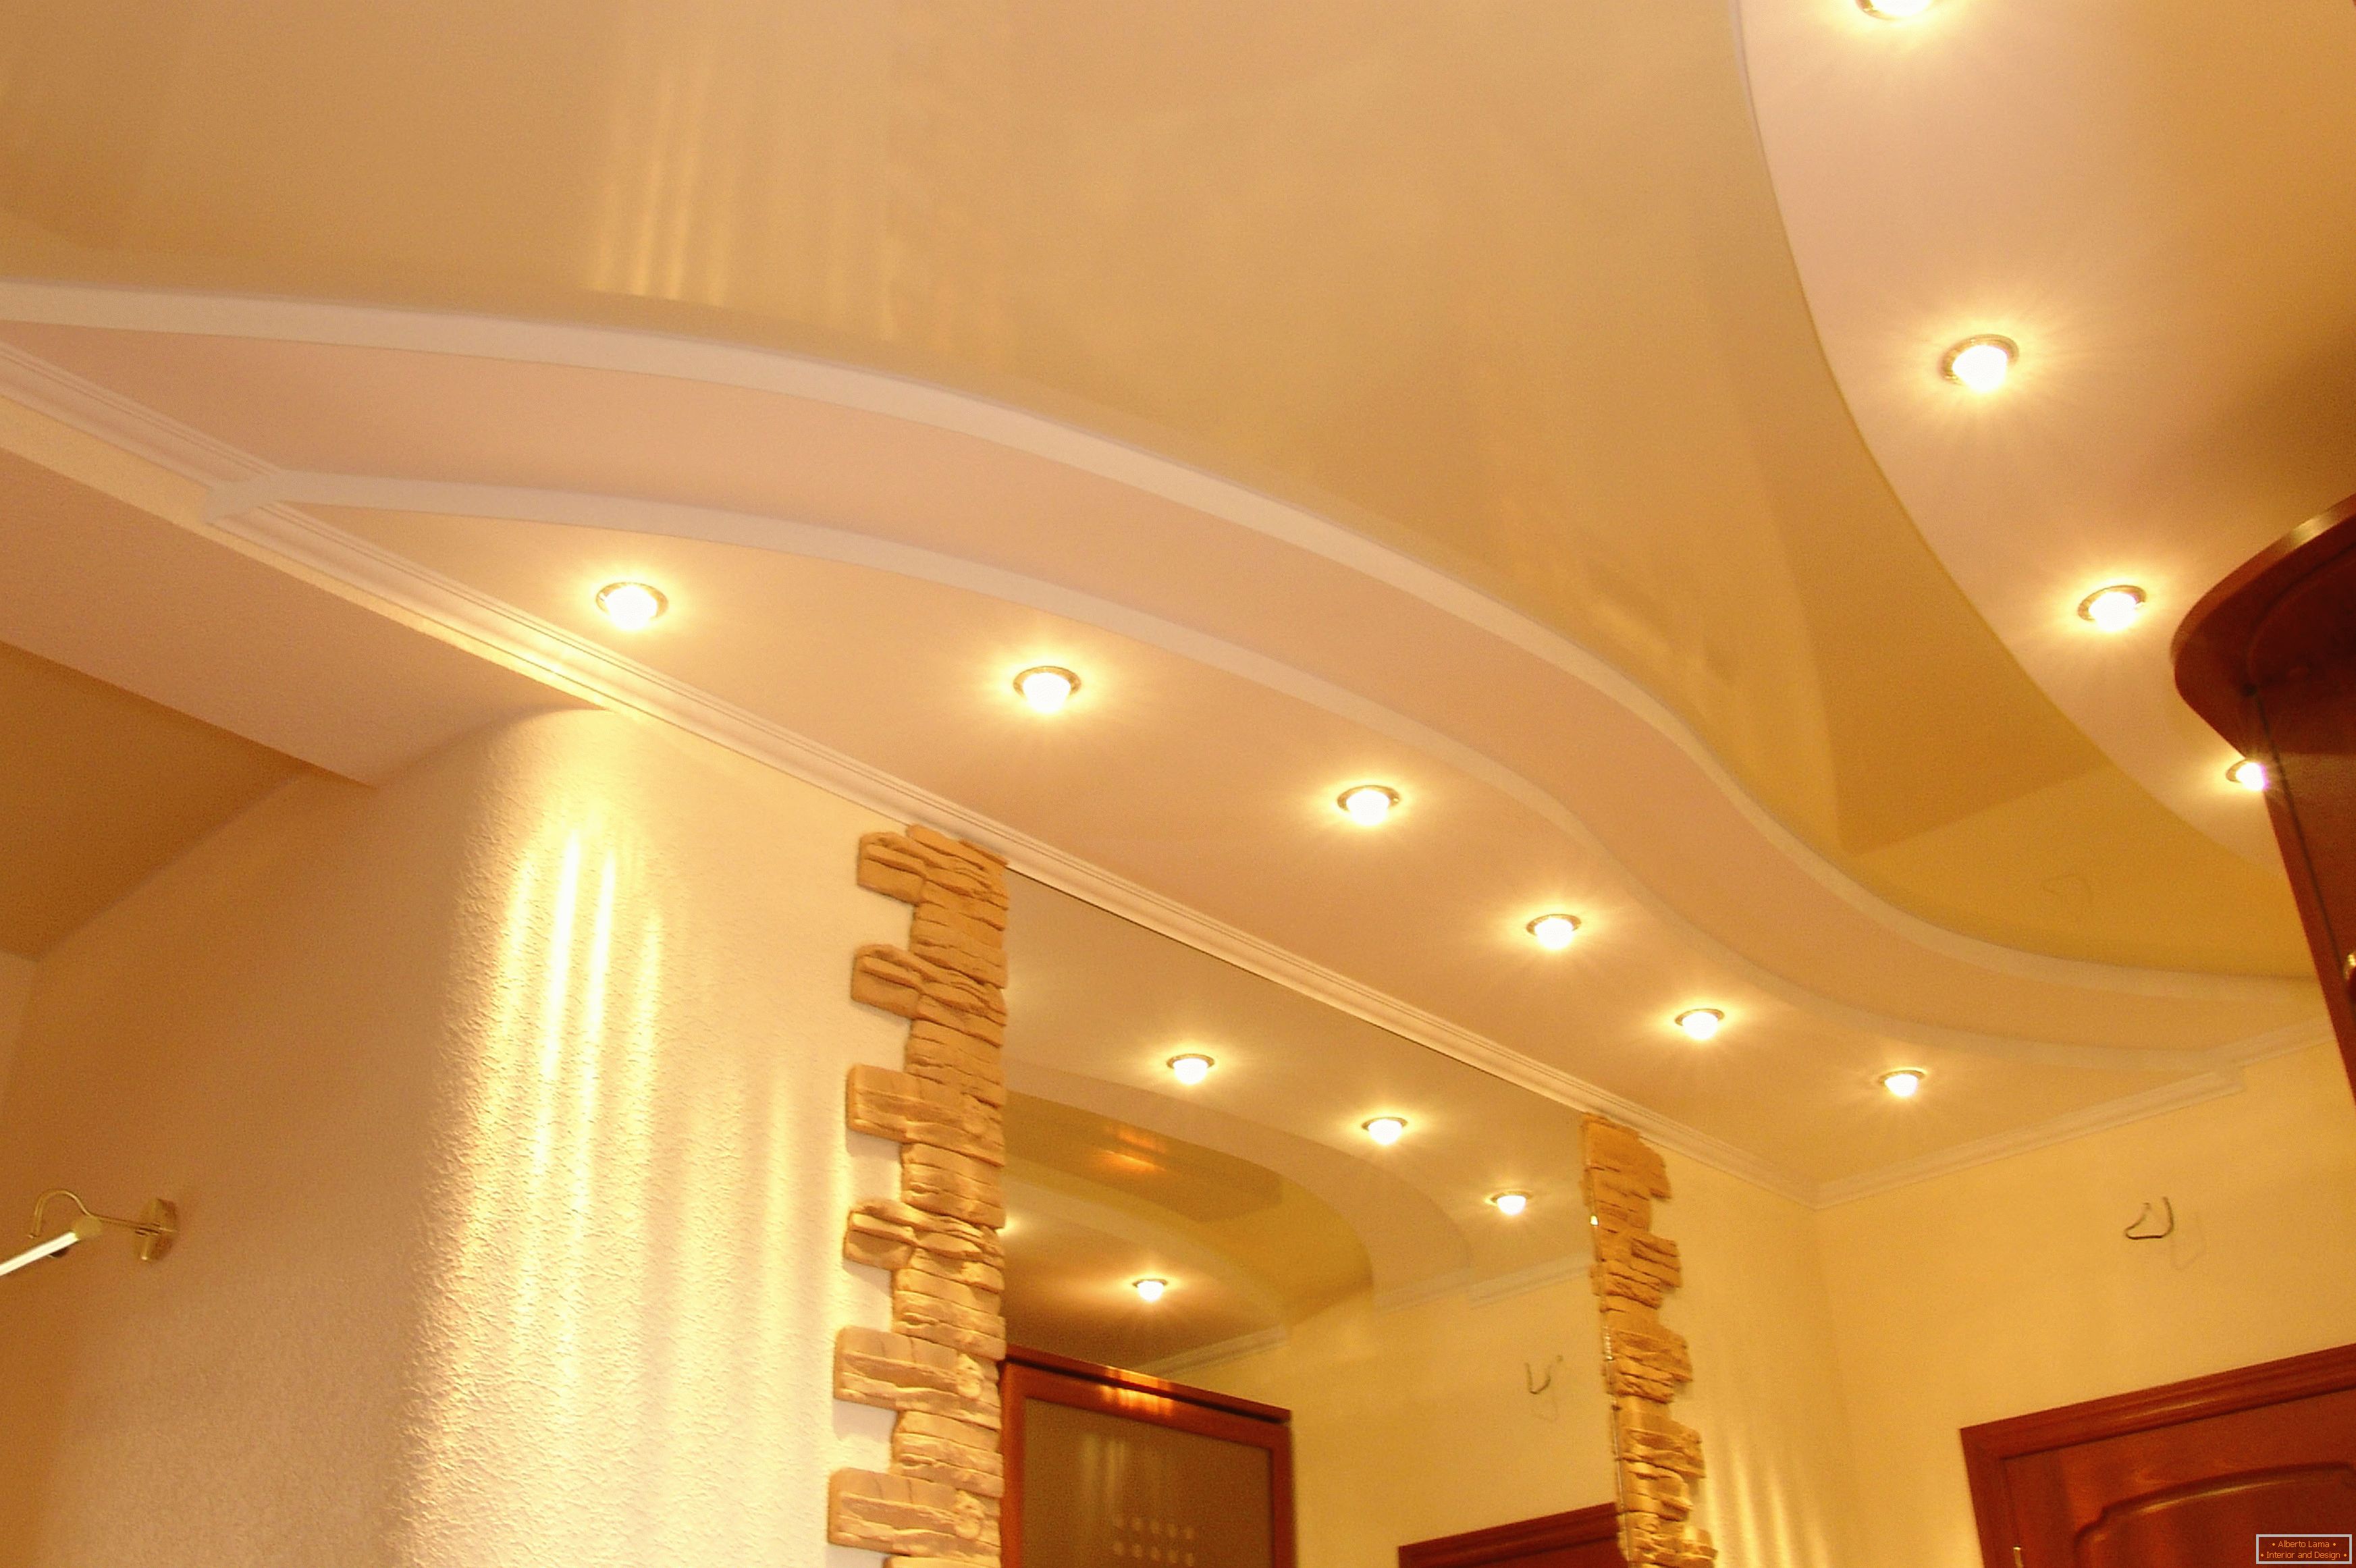 Tavan decorat corect pe hol. Punct de iluminat - cea mai acceptabilă opțiune pentru tavane stretch PVC.